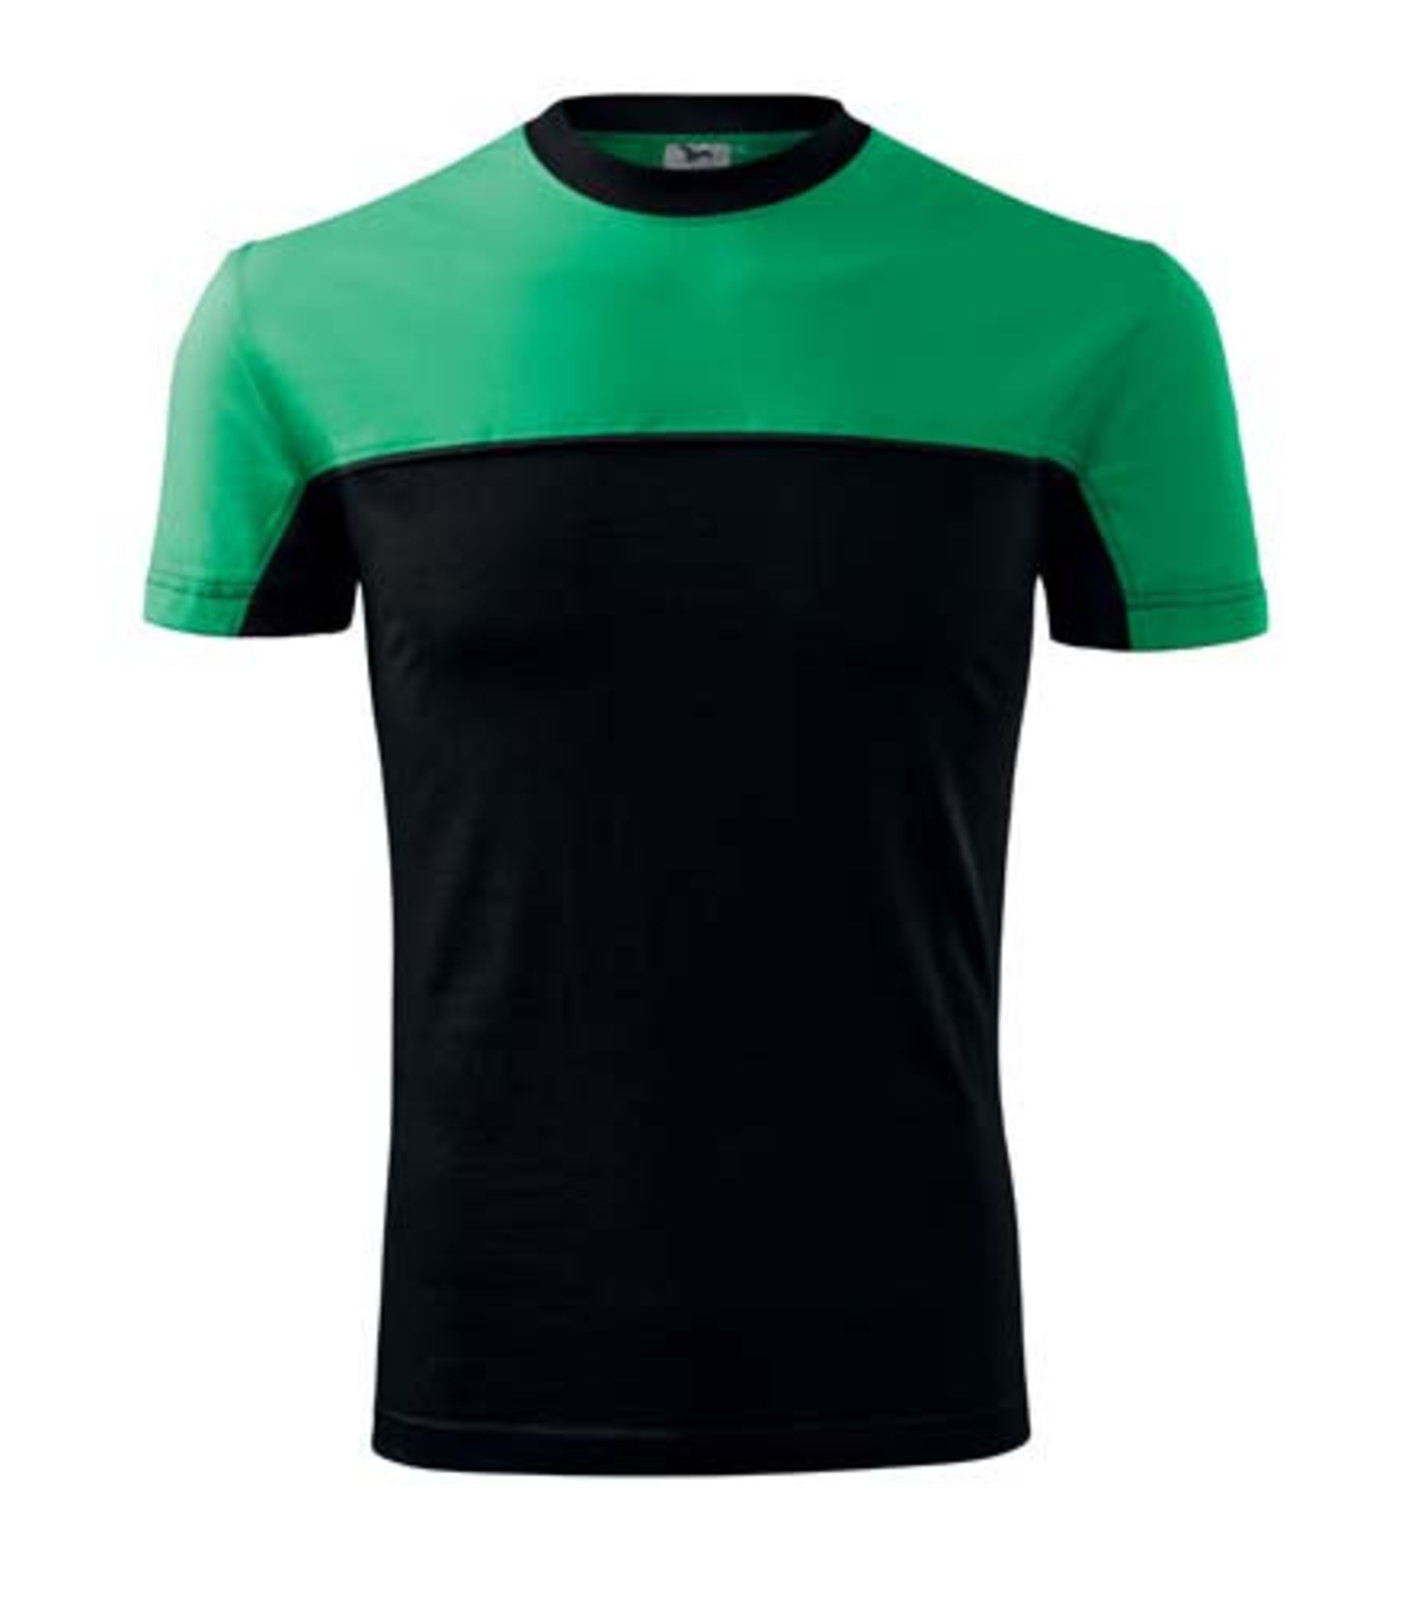 Unisex tričko Rimeck Colormix 109 - veľkosť: L, farba: zelená/čierna